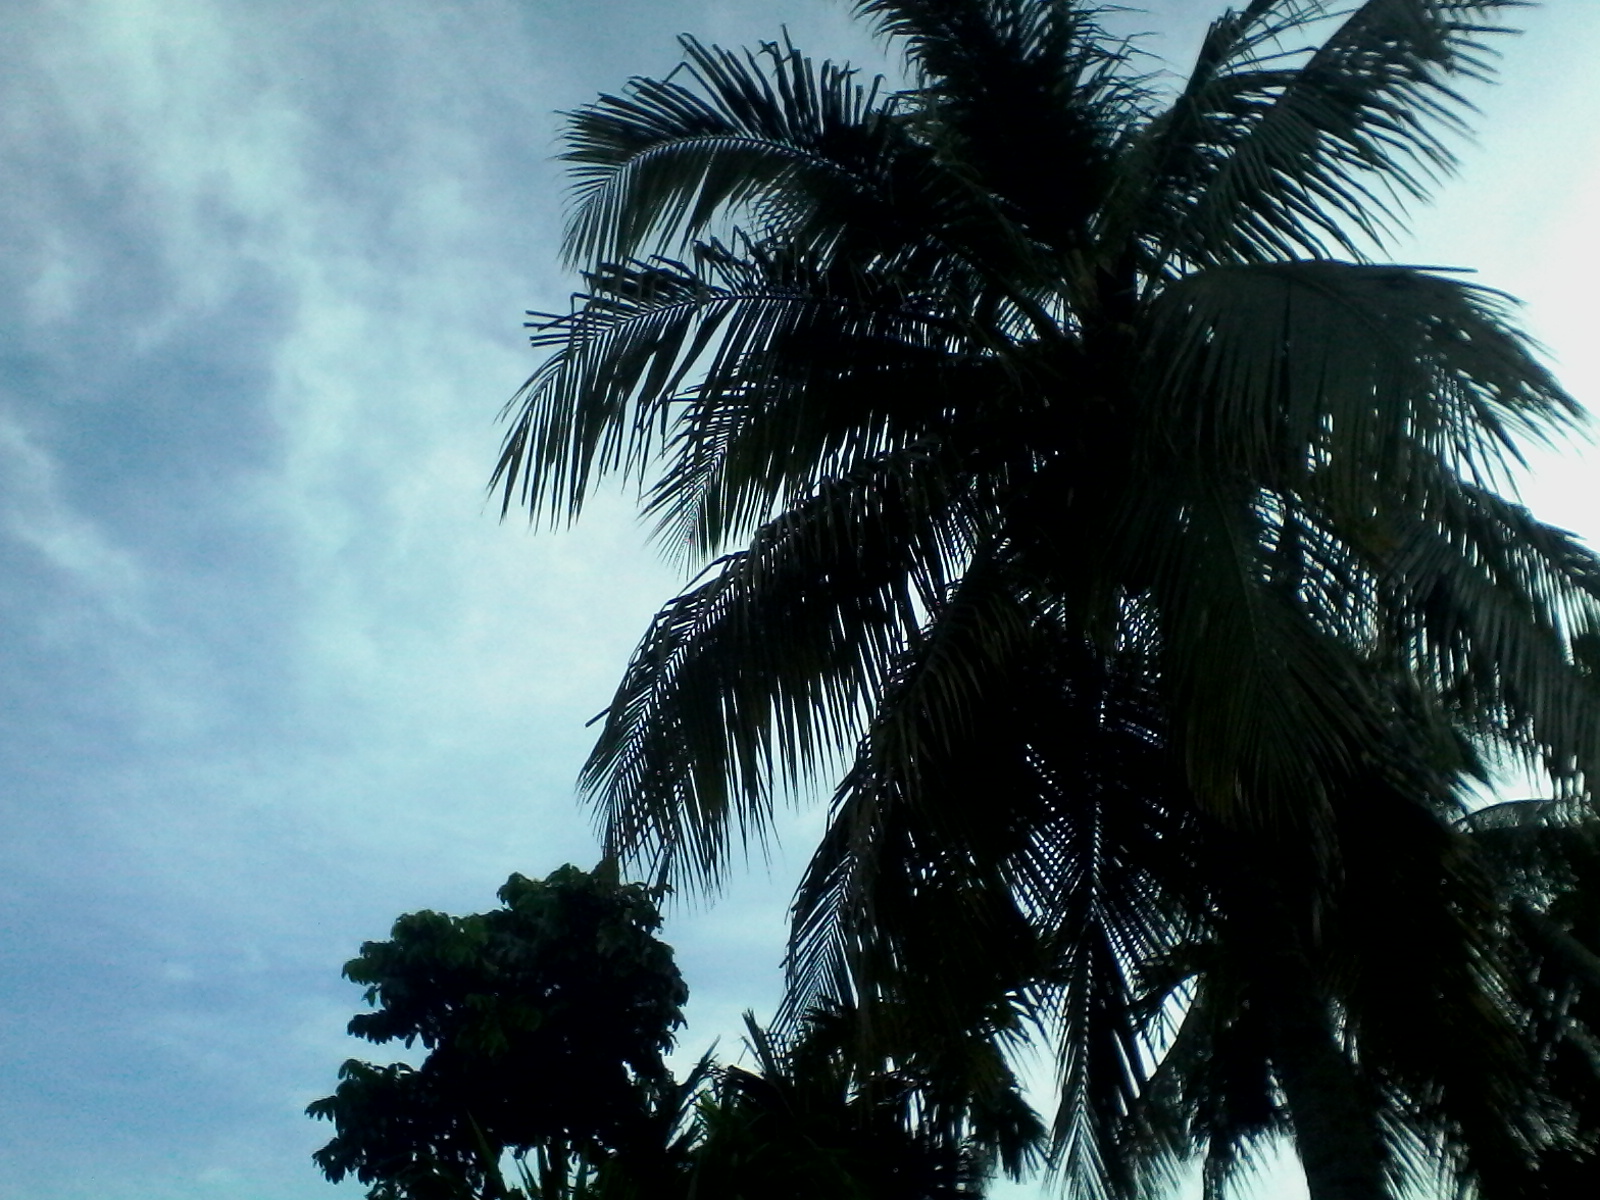 One coconut tree photo